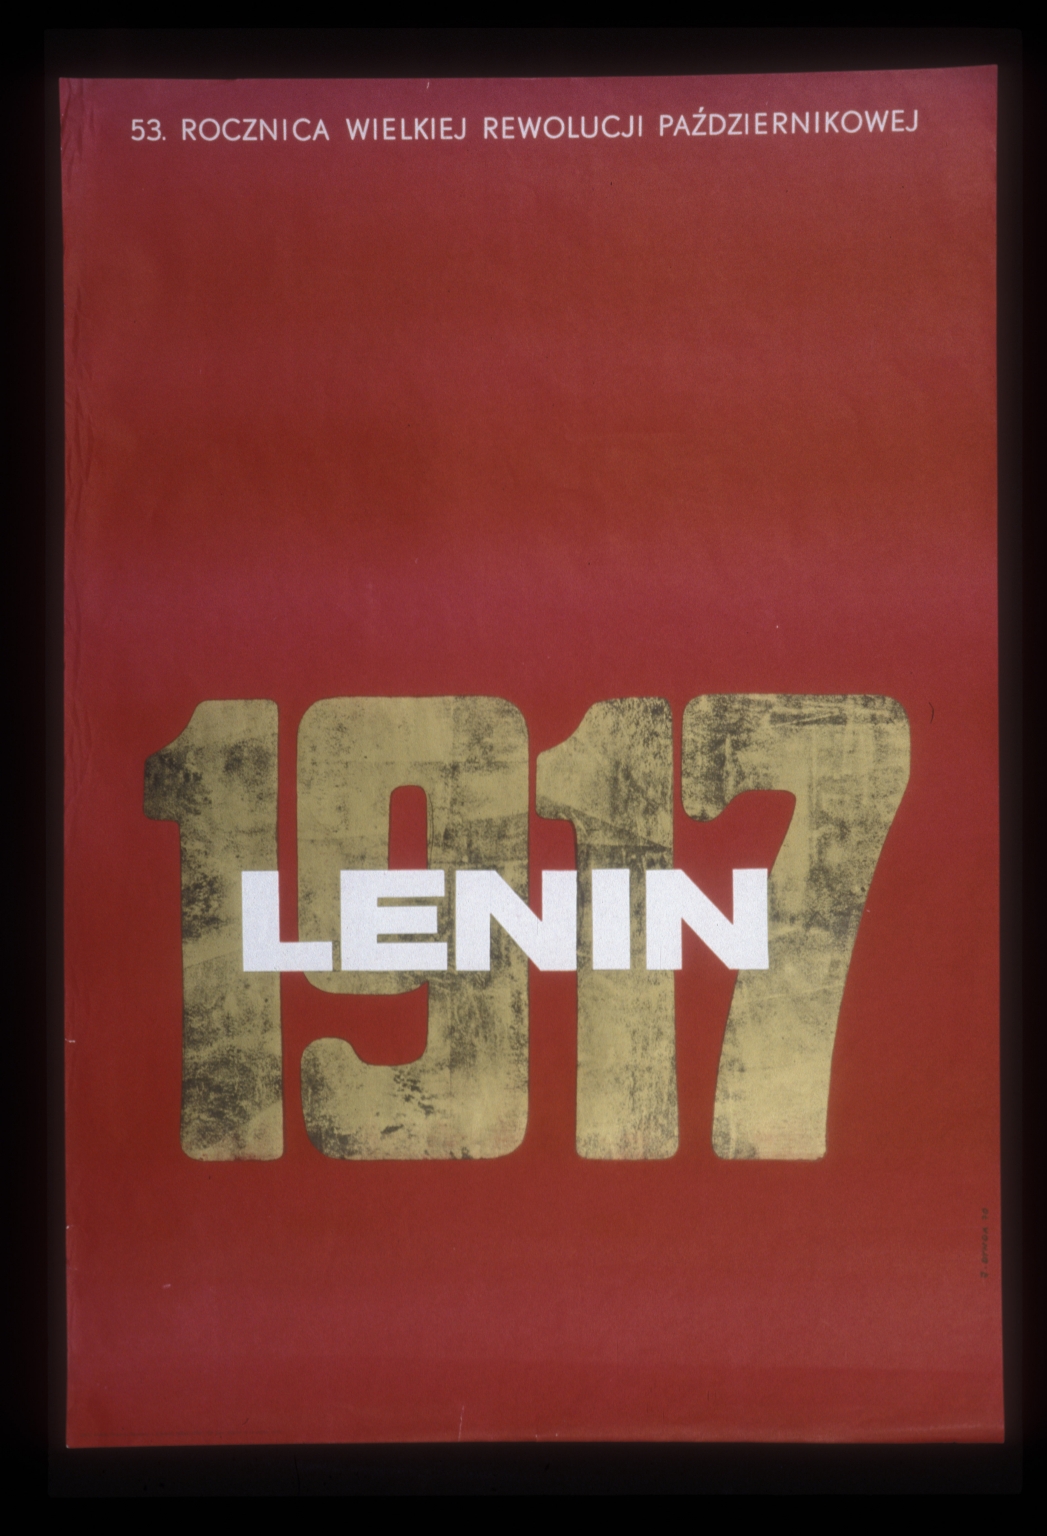 1917, Lenin: 53 rocznica Wielkiej Rewolucji Pazdziernikowej